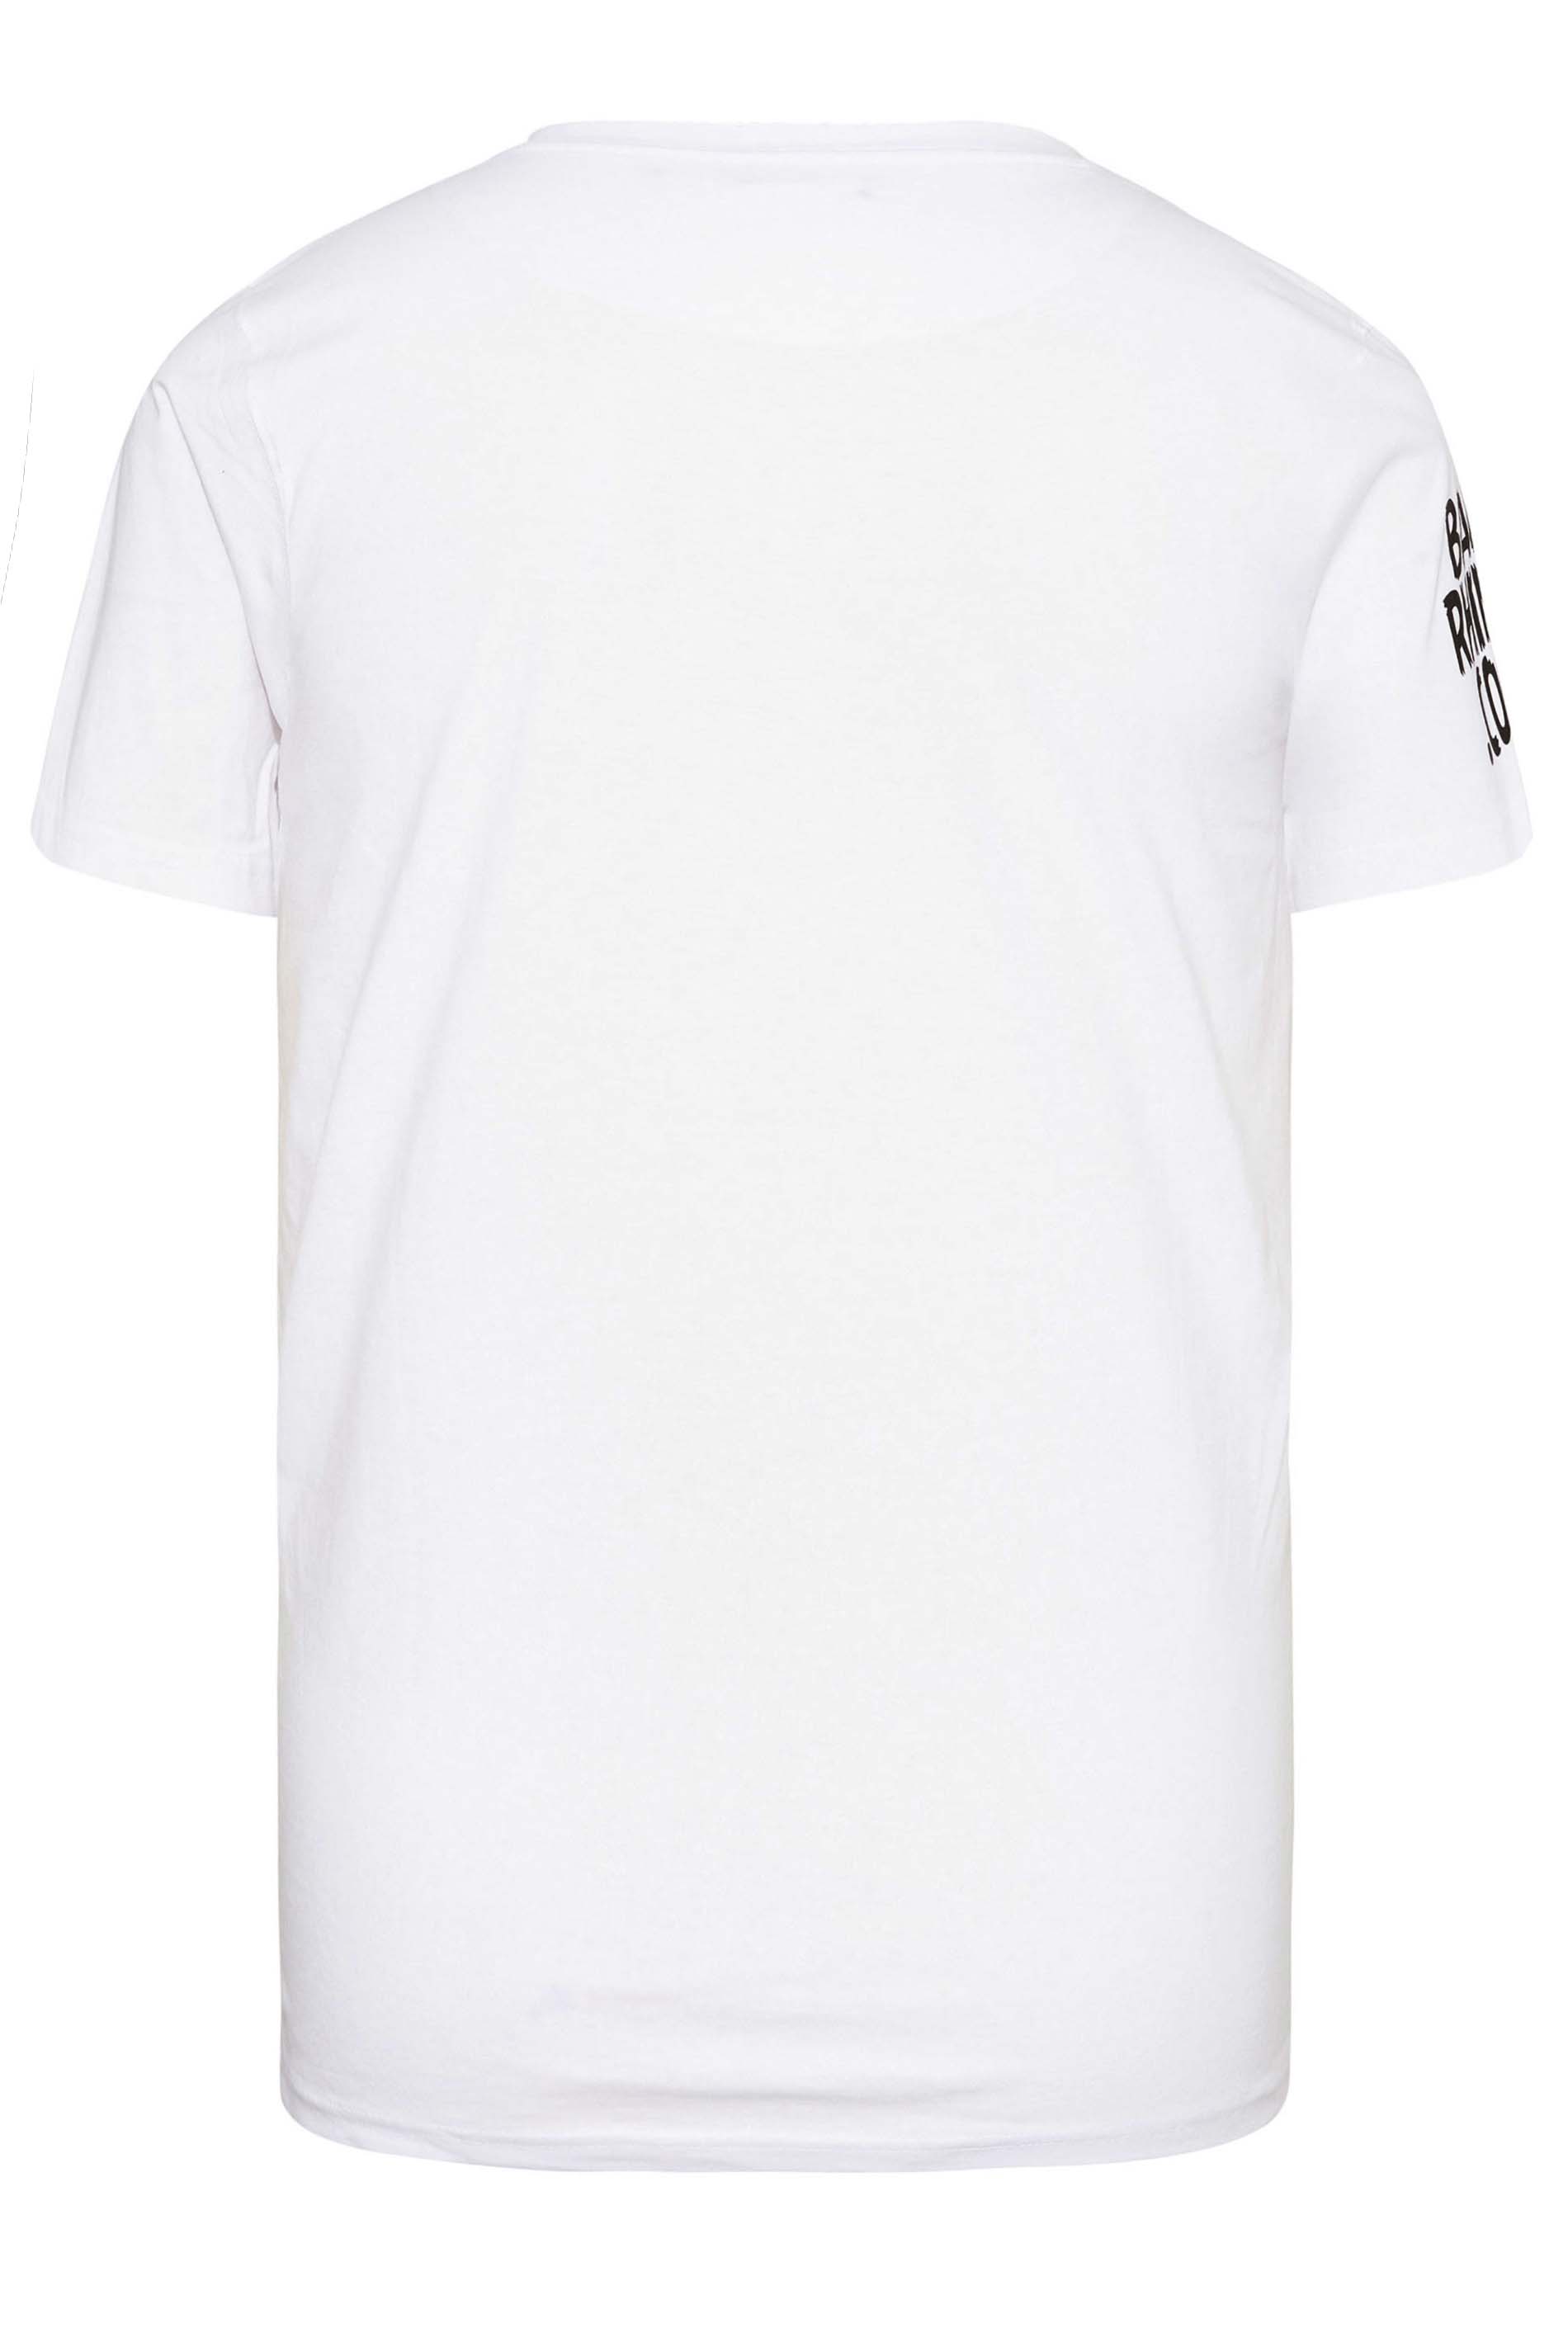 BadRhino White Ultimate Strongman T-Shirt | BadRhino 3